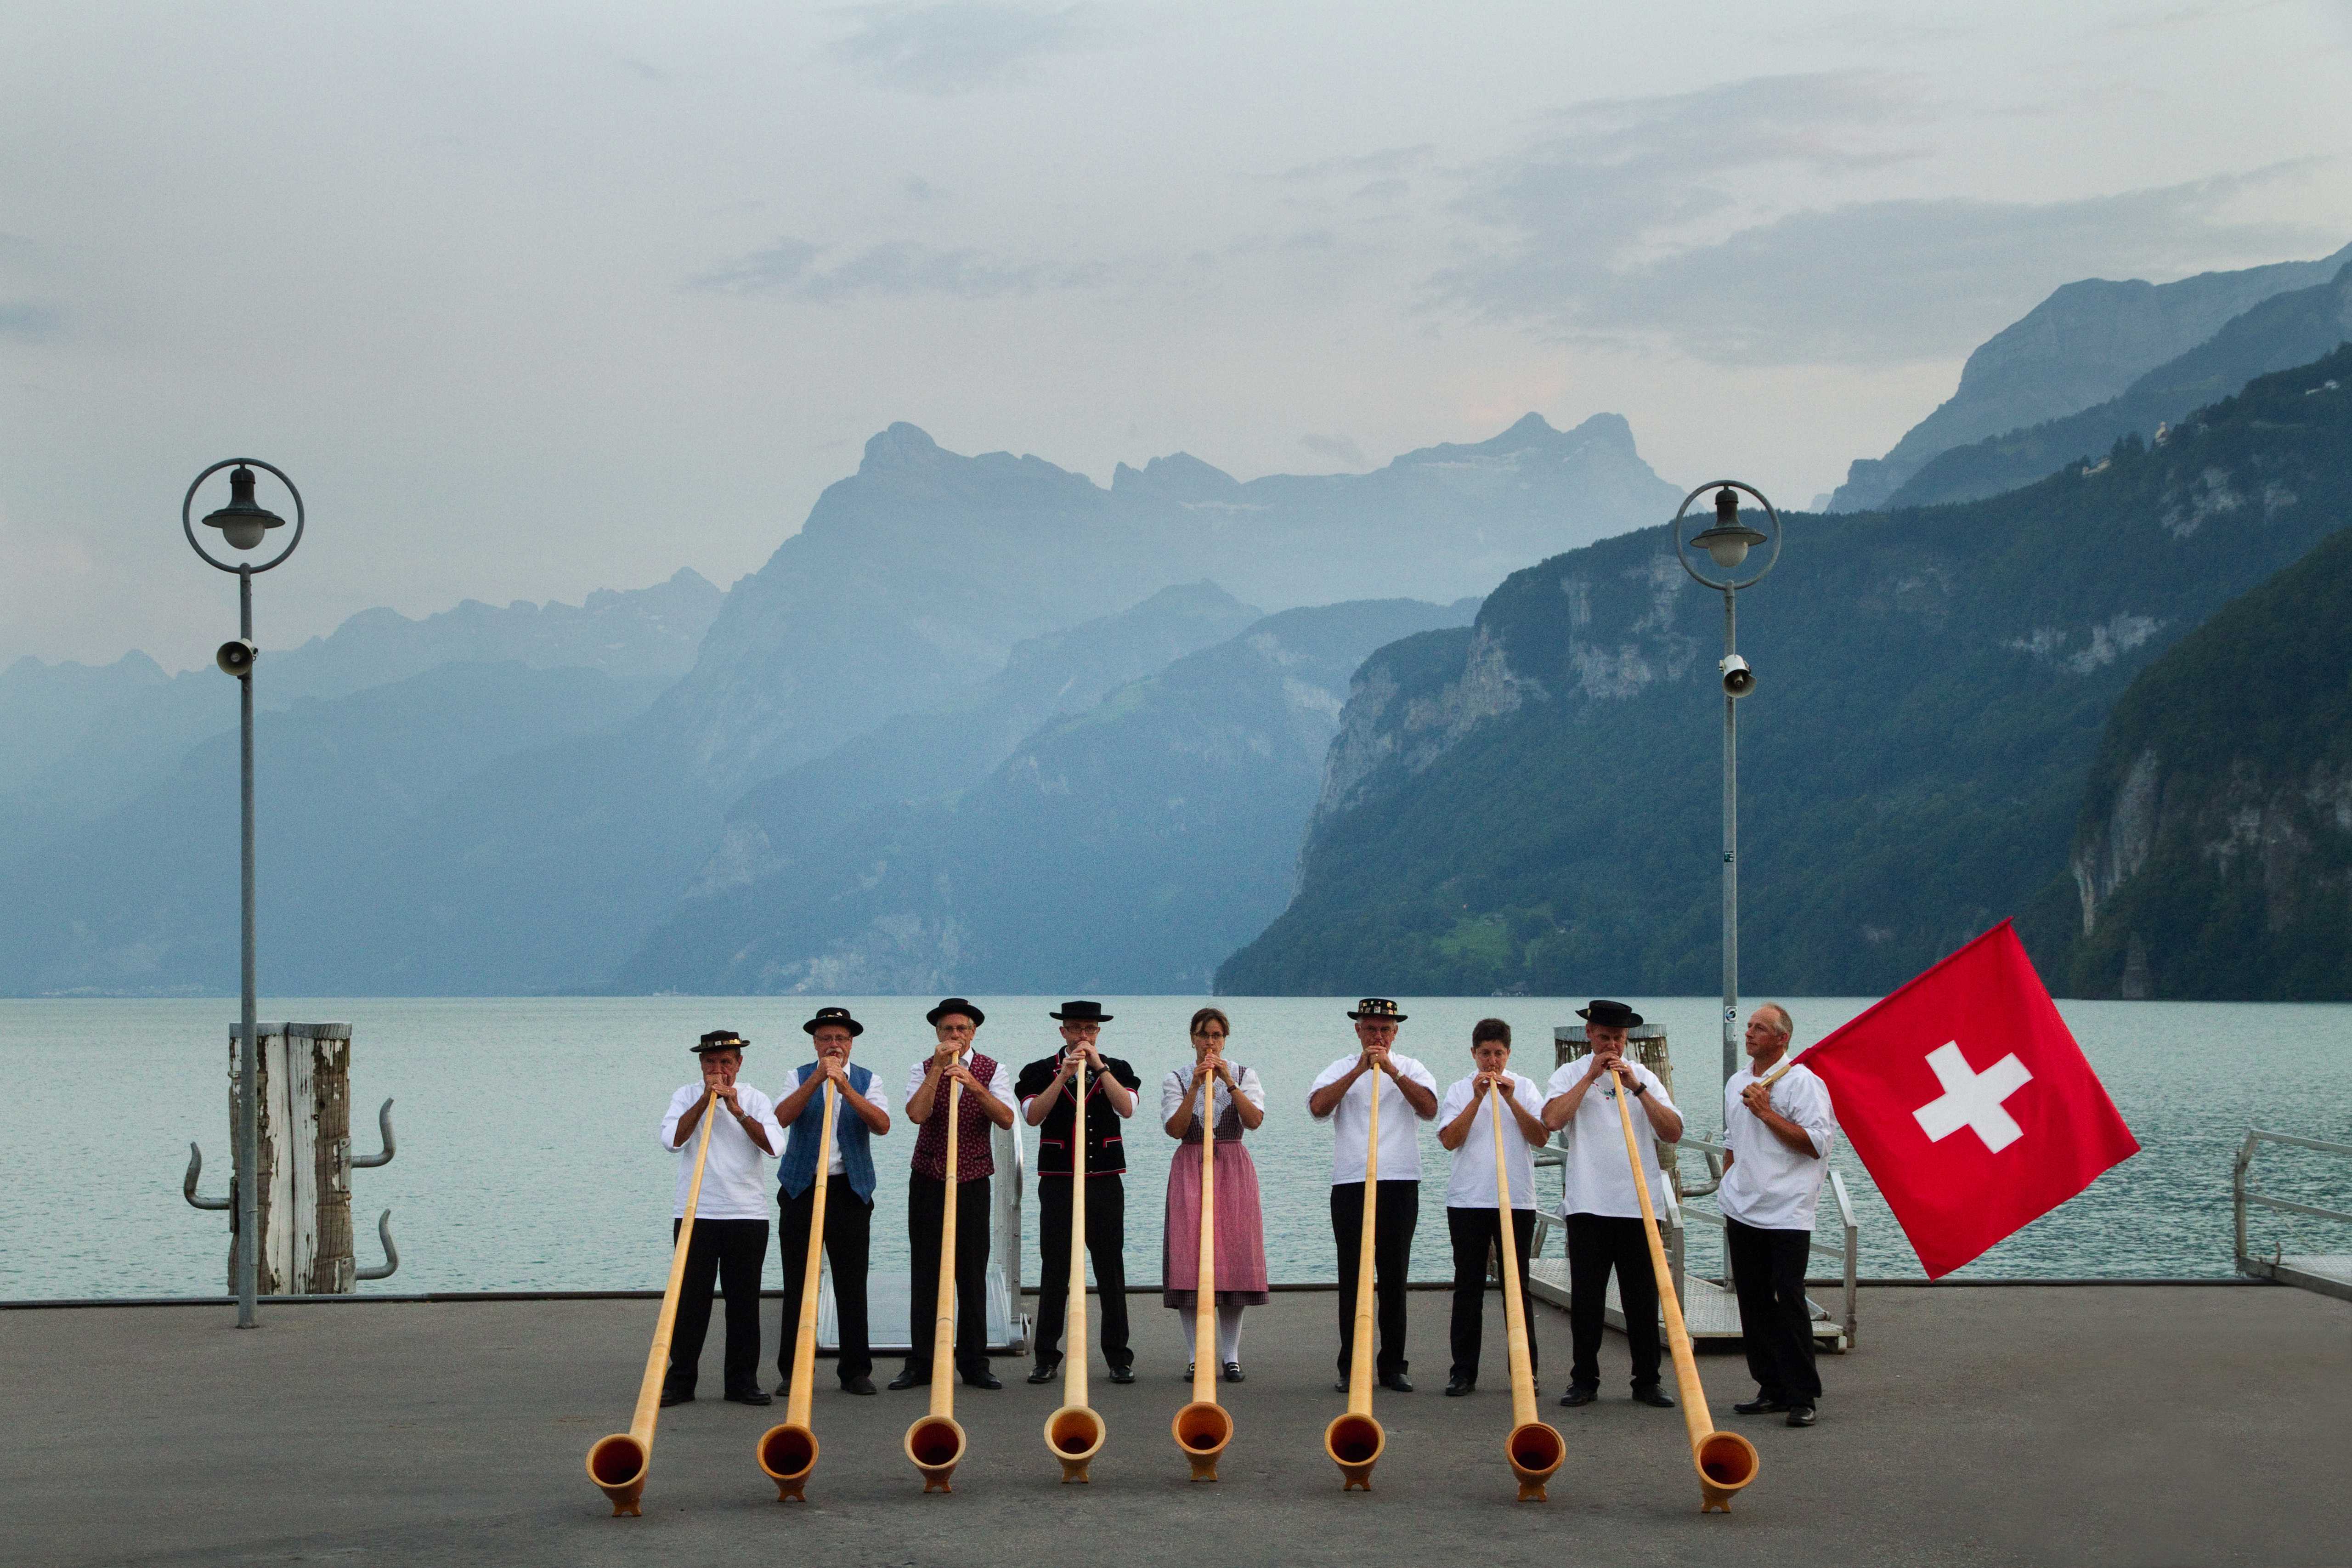 Швейцария численность населения. Швейцария населенность. Культура Швейцарии. Население Швейцарии. Швейцария туризм.